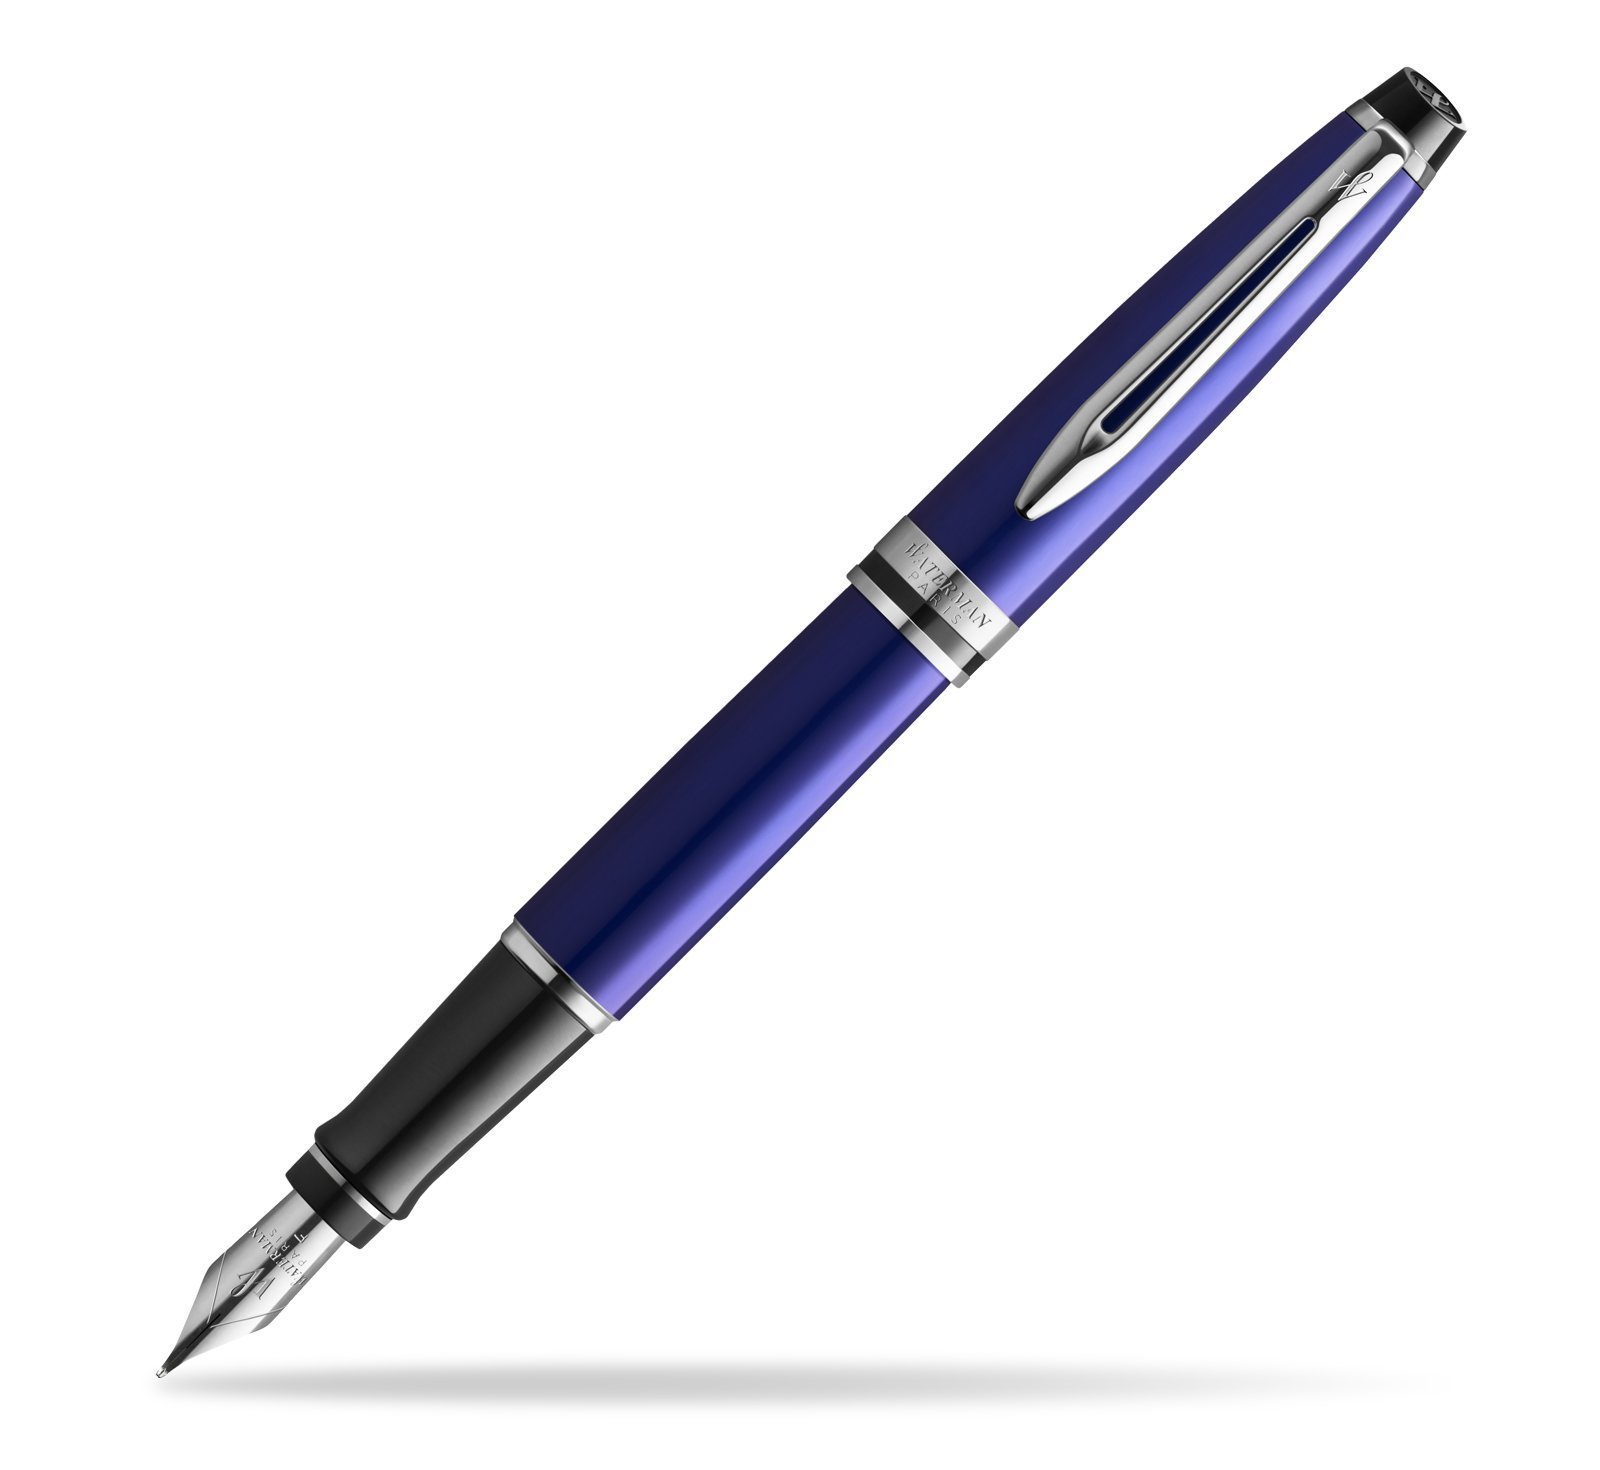 Ручка перьевая - Waterman Expert 3 F